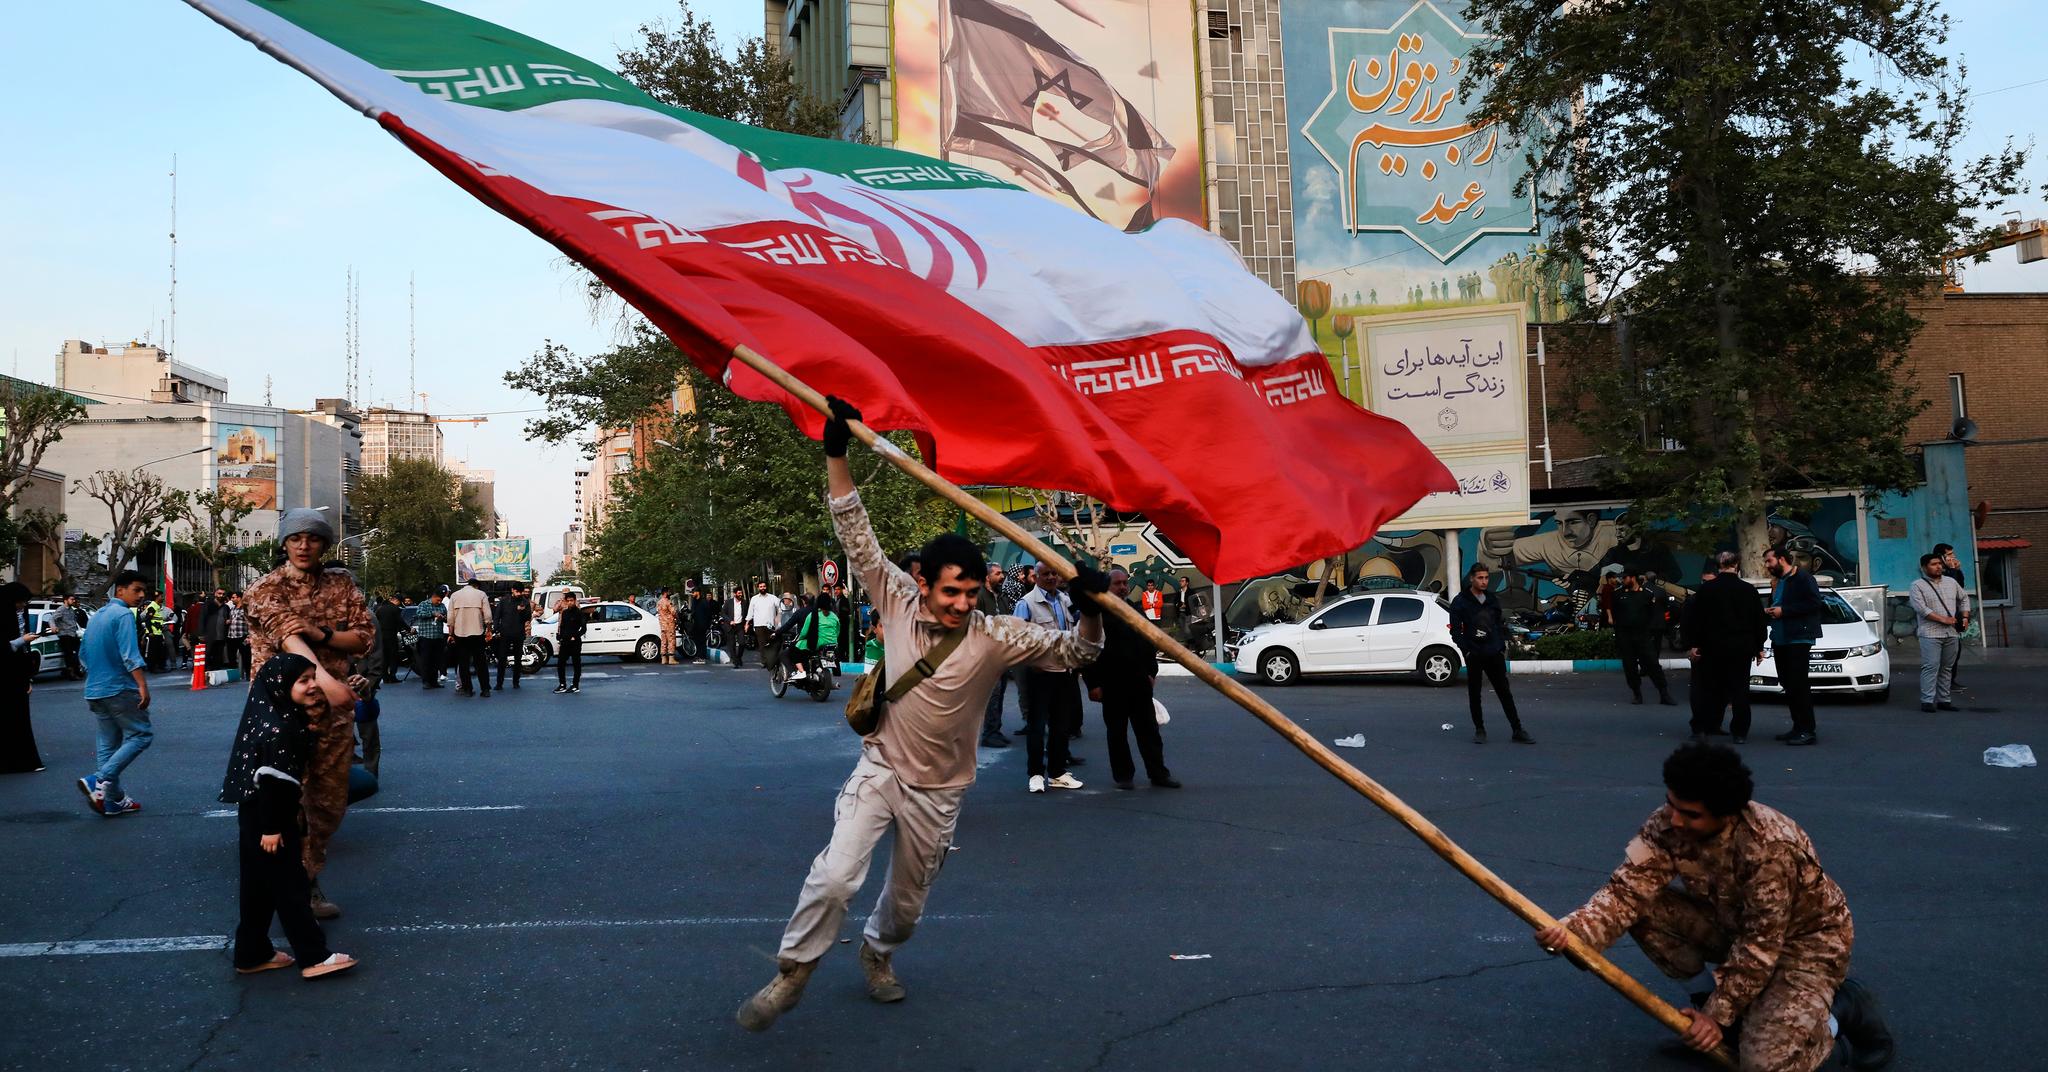 Noen iranere var begeistret etter søndagens angrep på Israel. Etter at Israel slo tilbake, er det iranske budskapet at det var et veldig svakt angrep uten effekt.